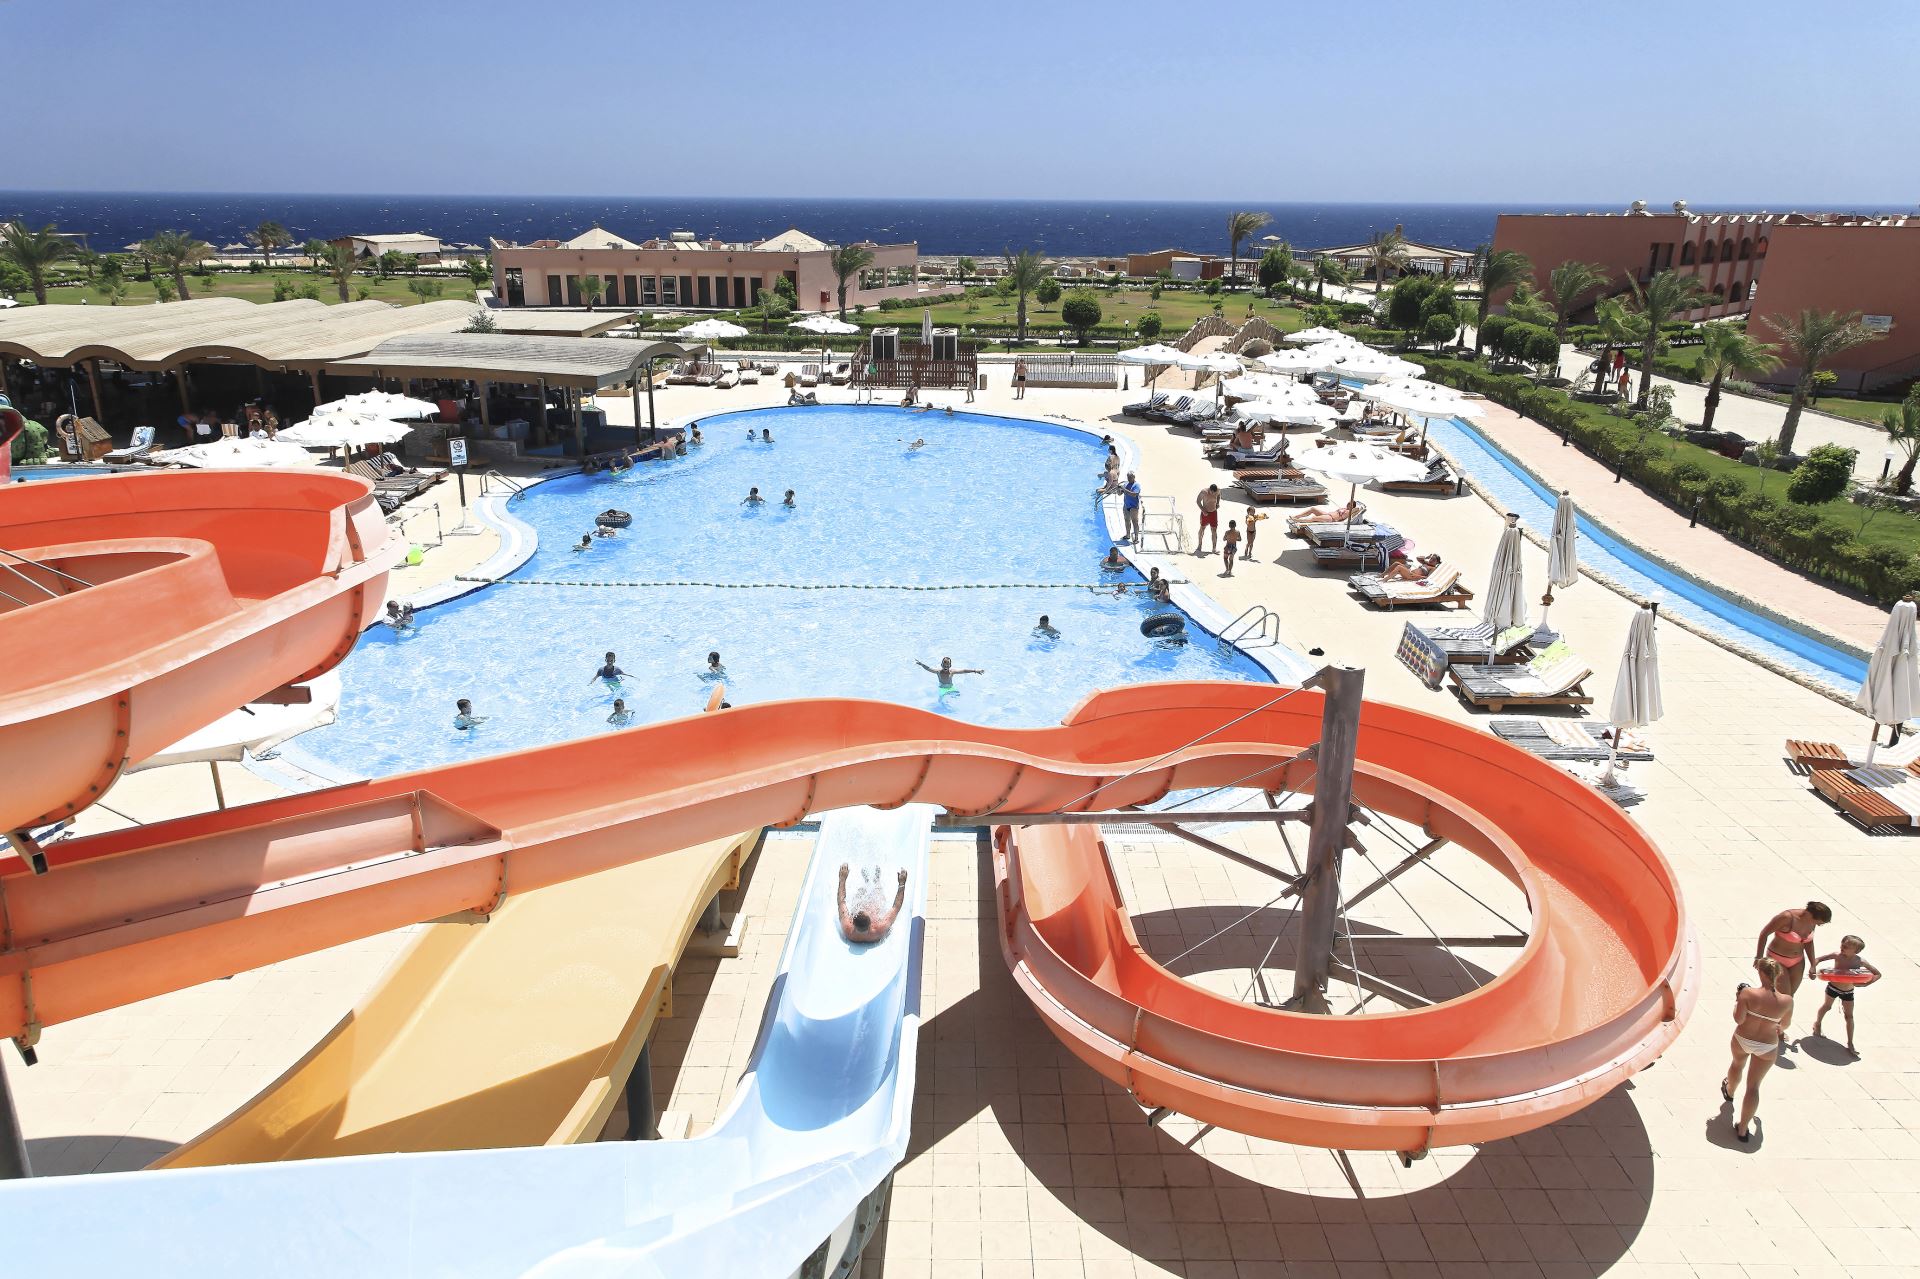 Three Corners Happy Life Beach Resort - Marsa Alam Egipt - opis hotelu